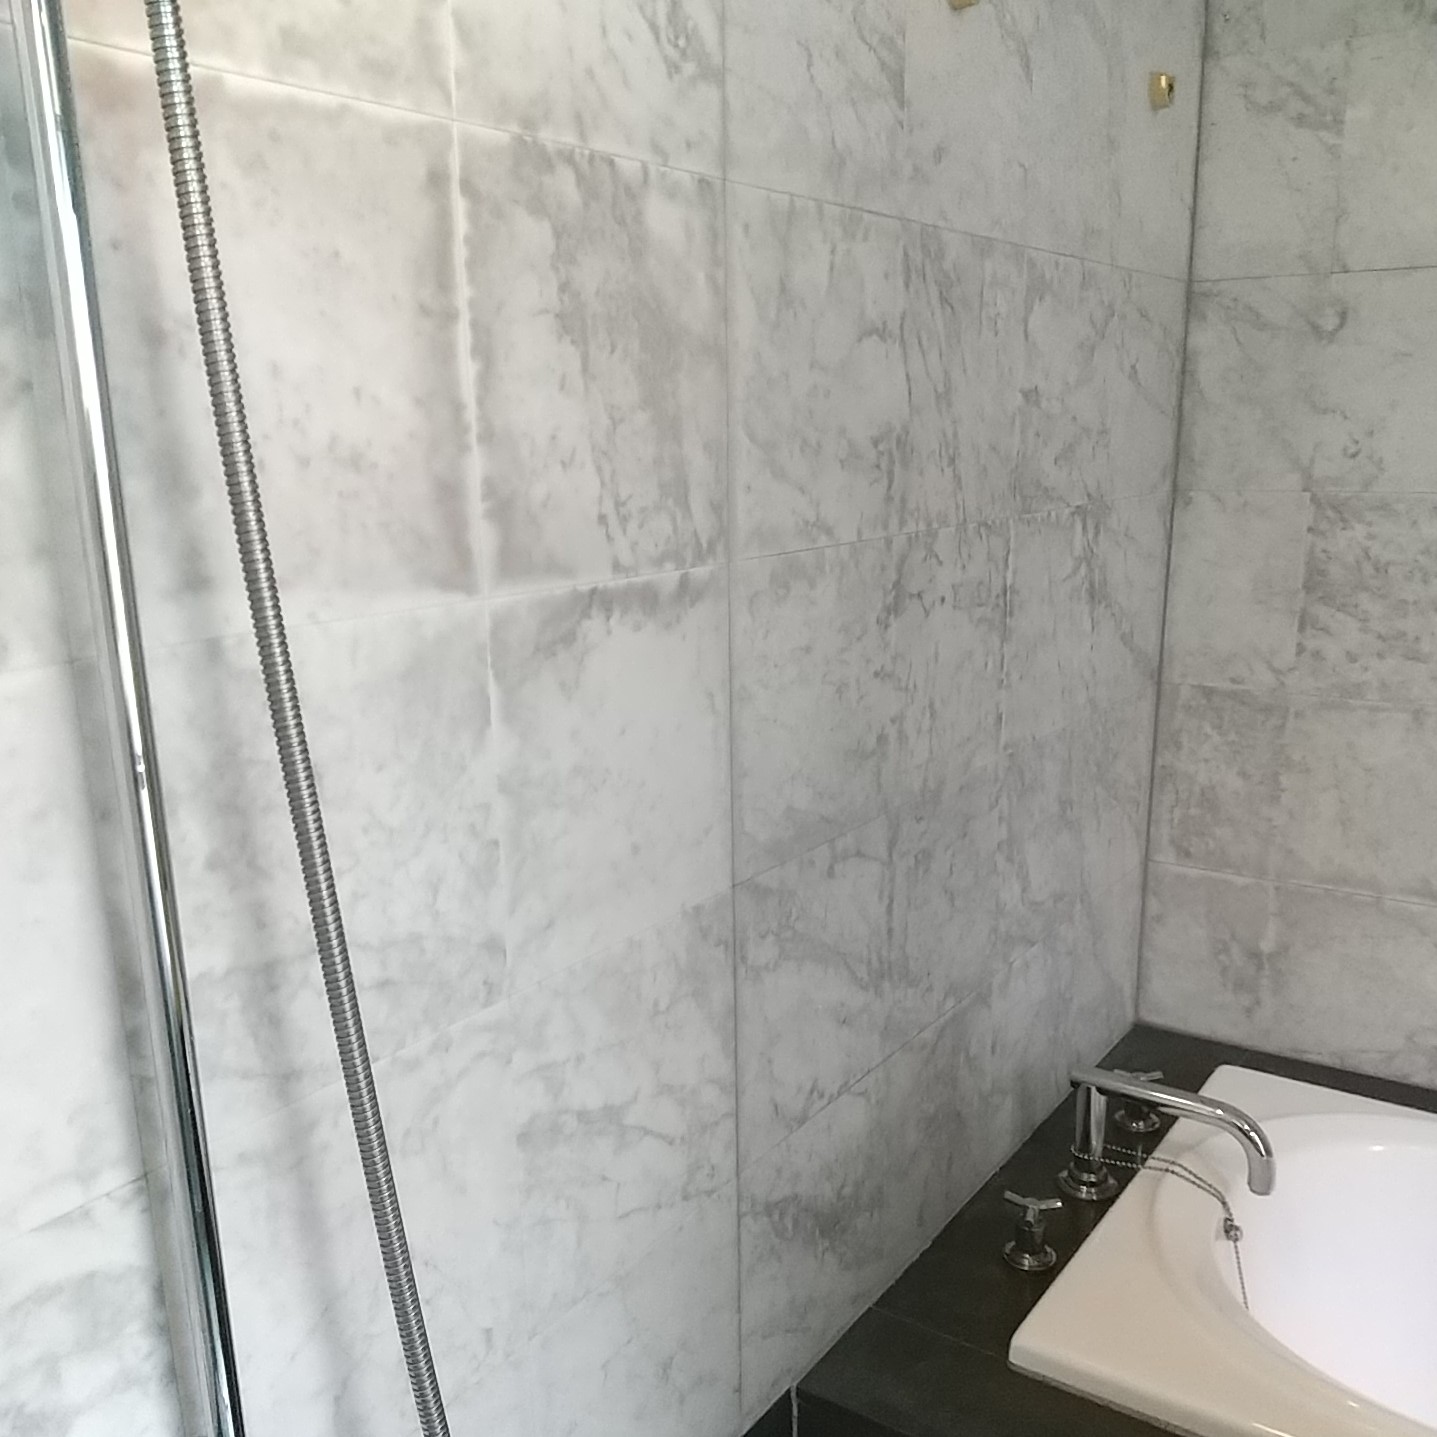 浴室内の白大理石の壁が茶色に変色!